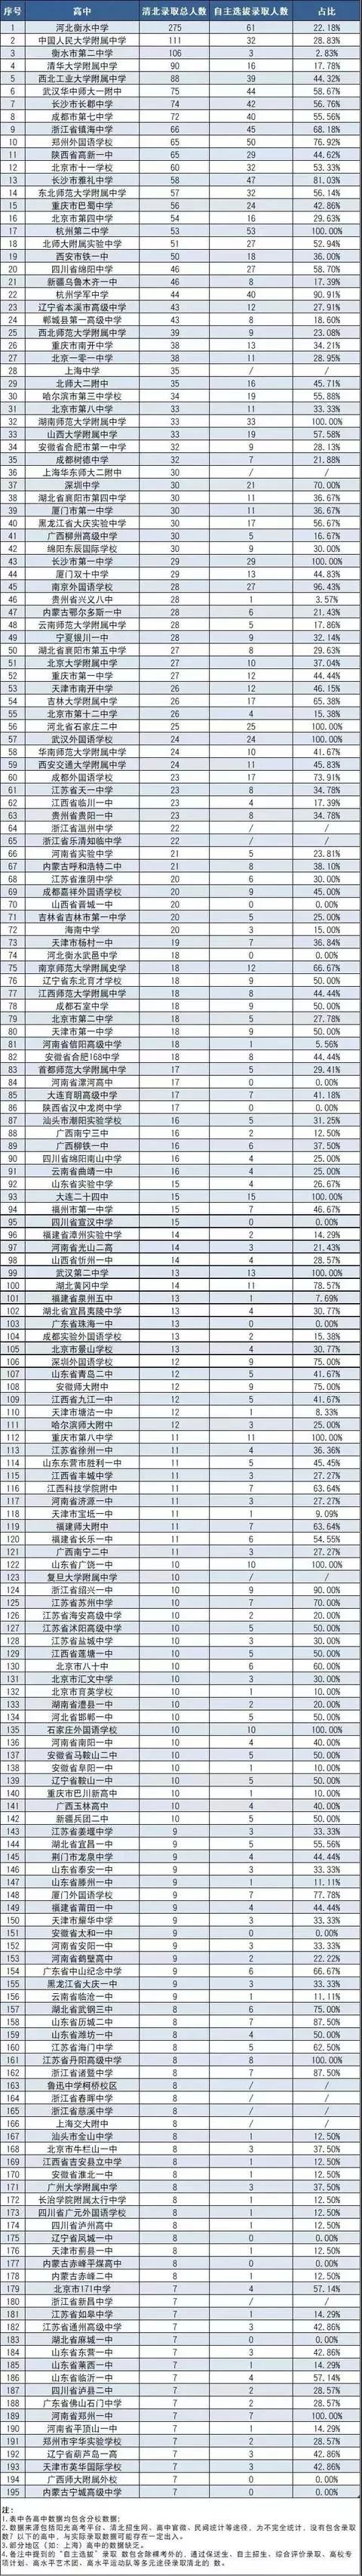 197所中学清华北大自主选拔录取方式人数及占比统计